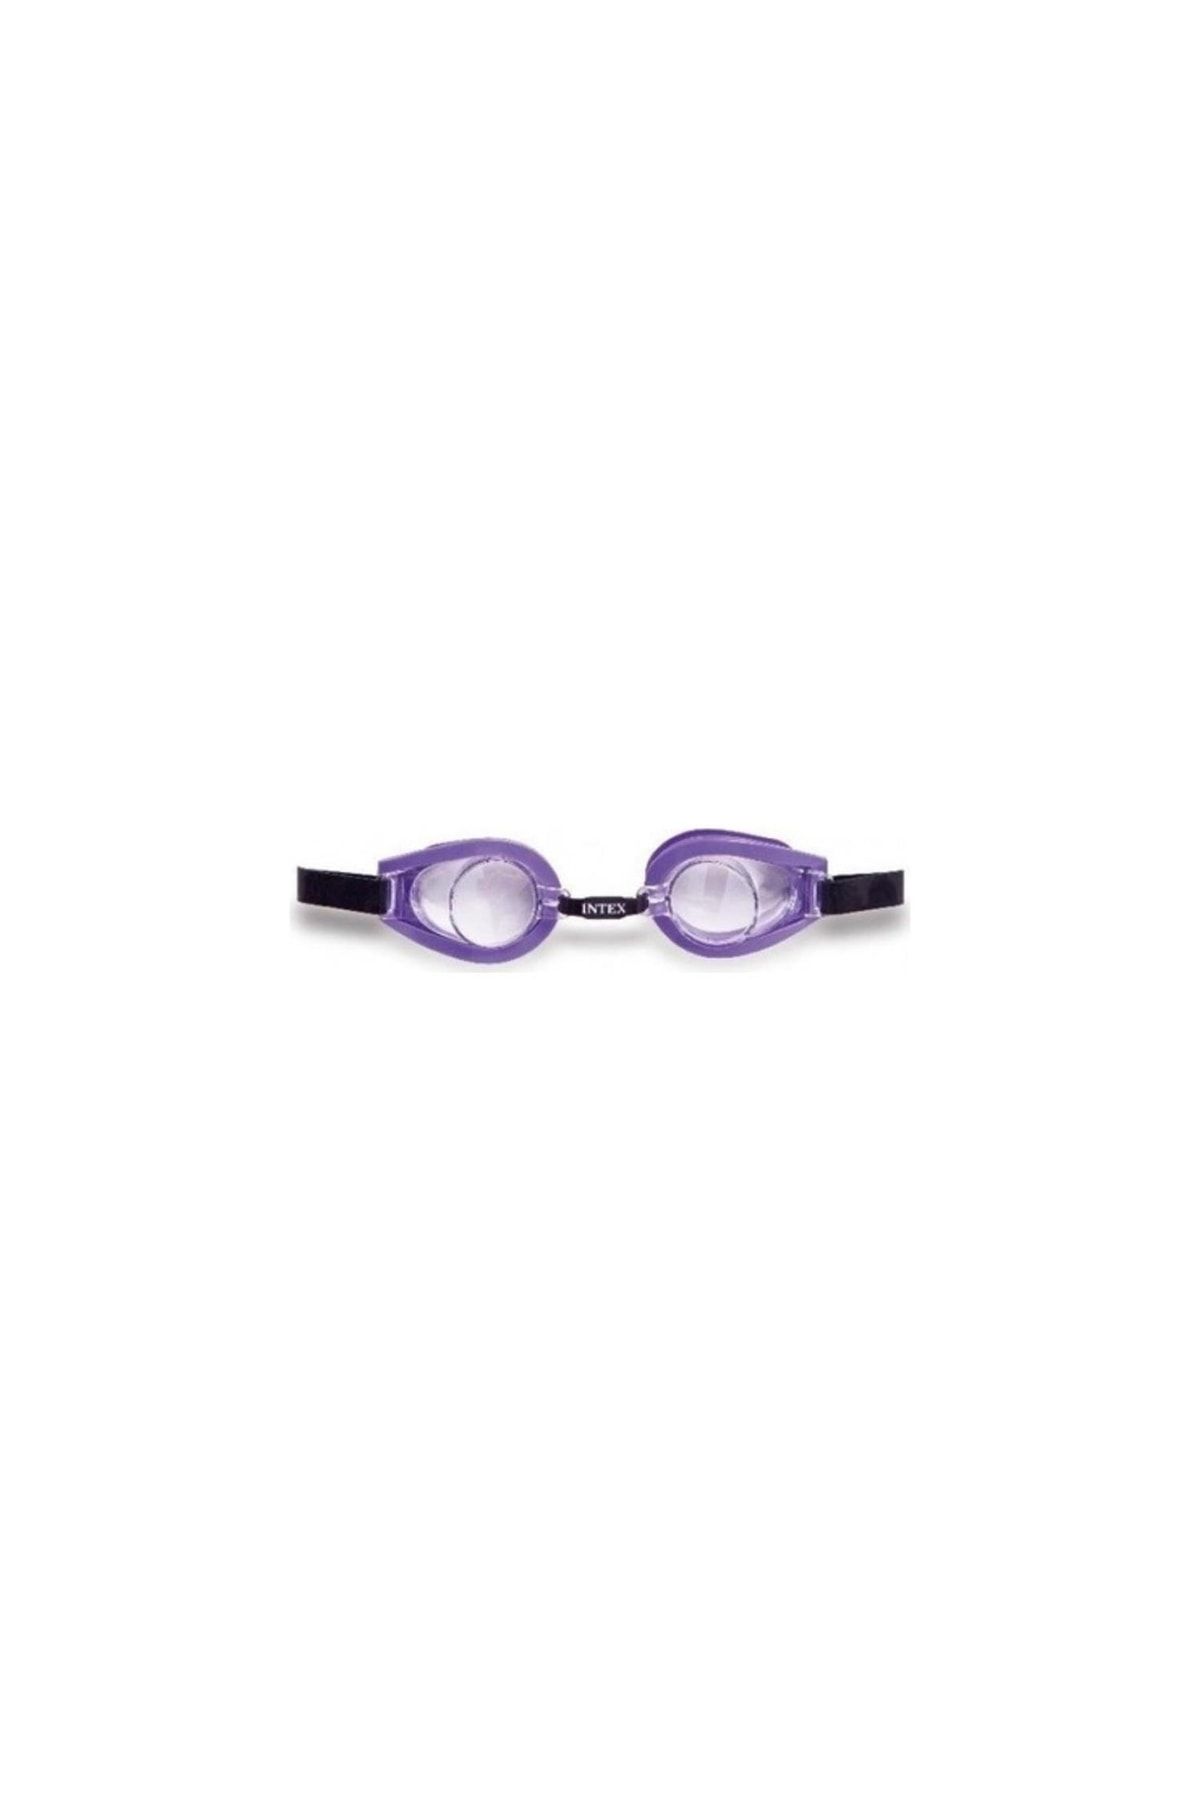 Vardem Intex Yüzücü Gözlük 55602